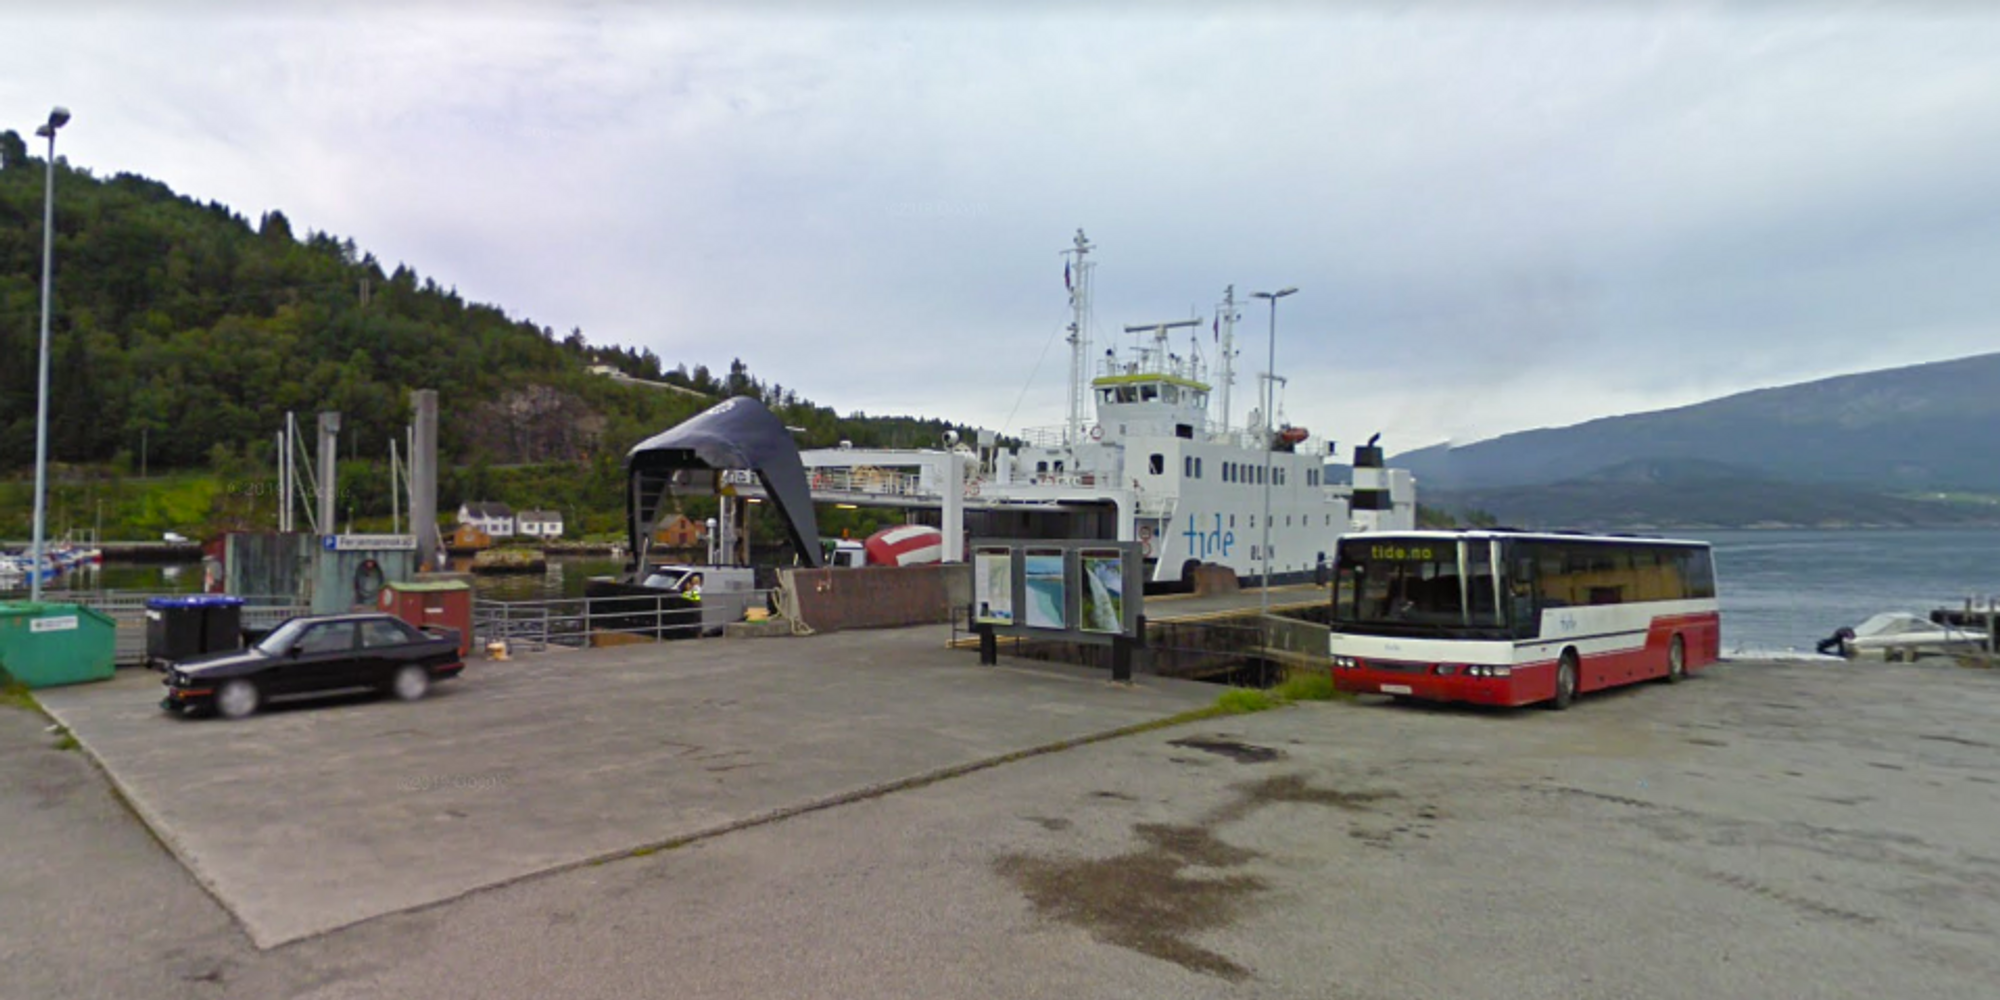 Ny fergekai i Jondal i Hardanger har vært ute på anbud for andre gang.